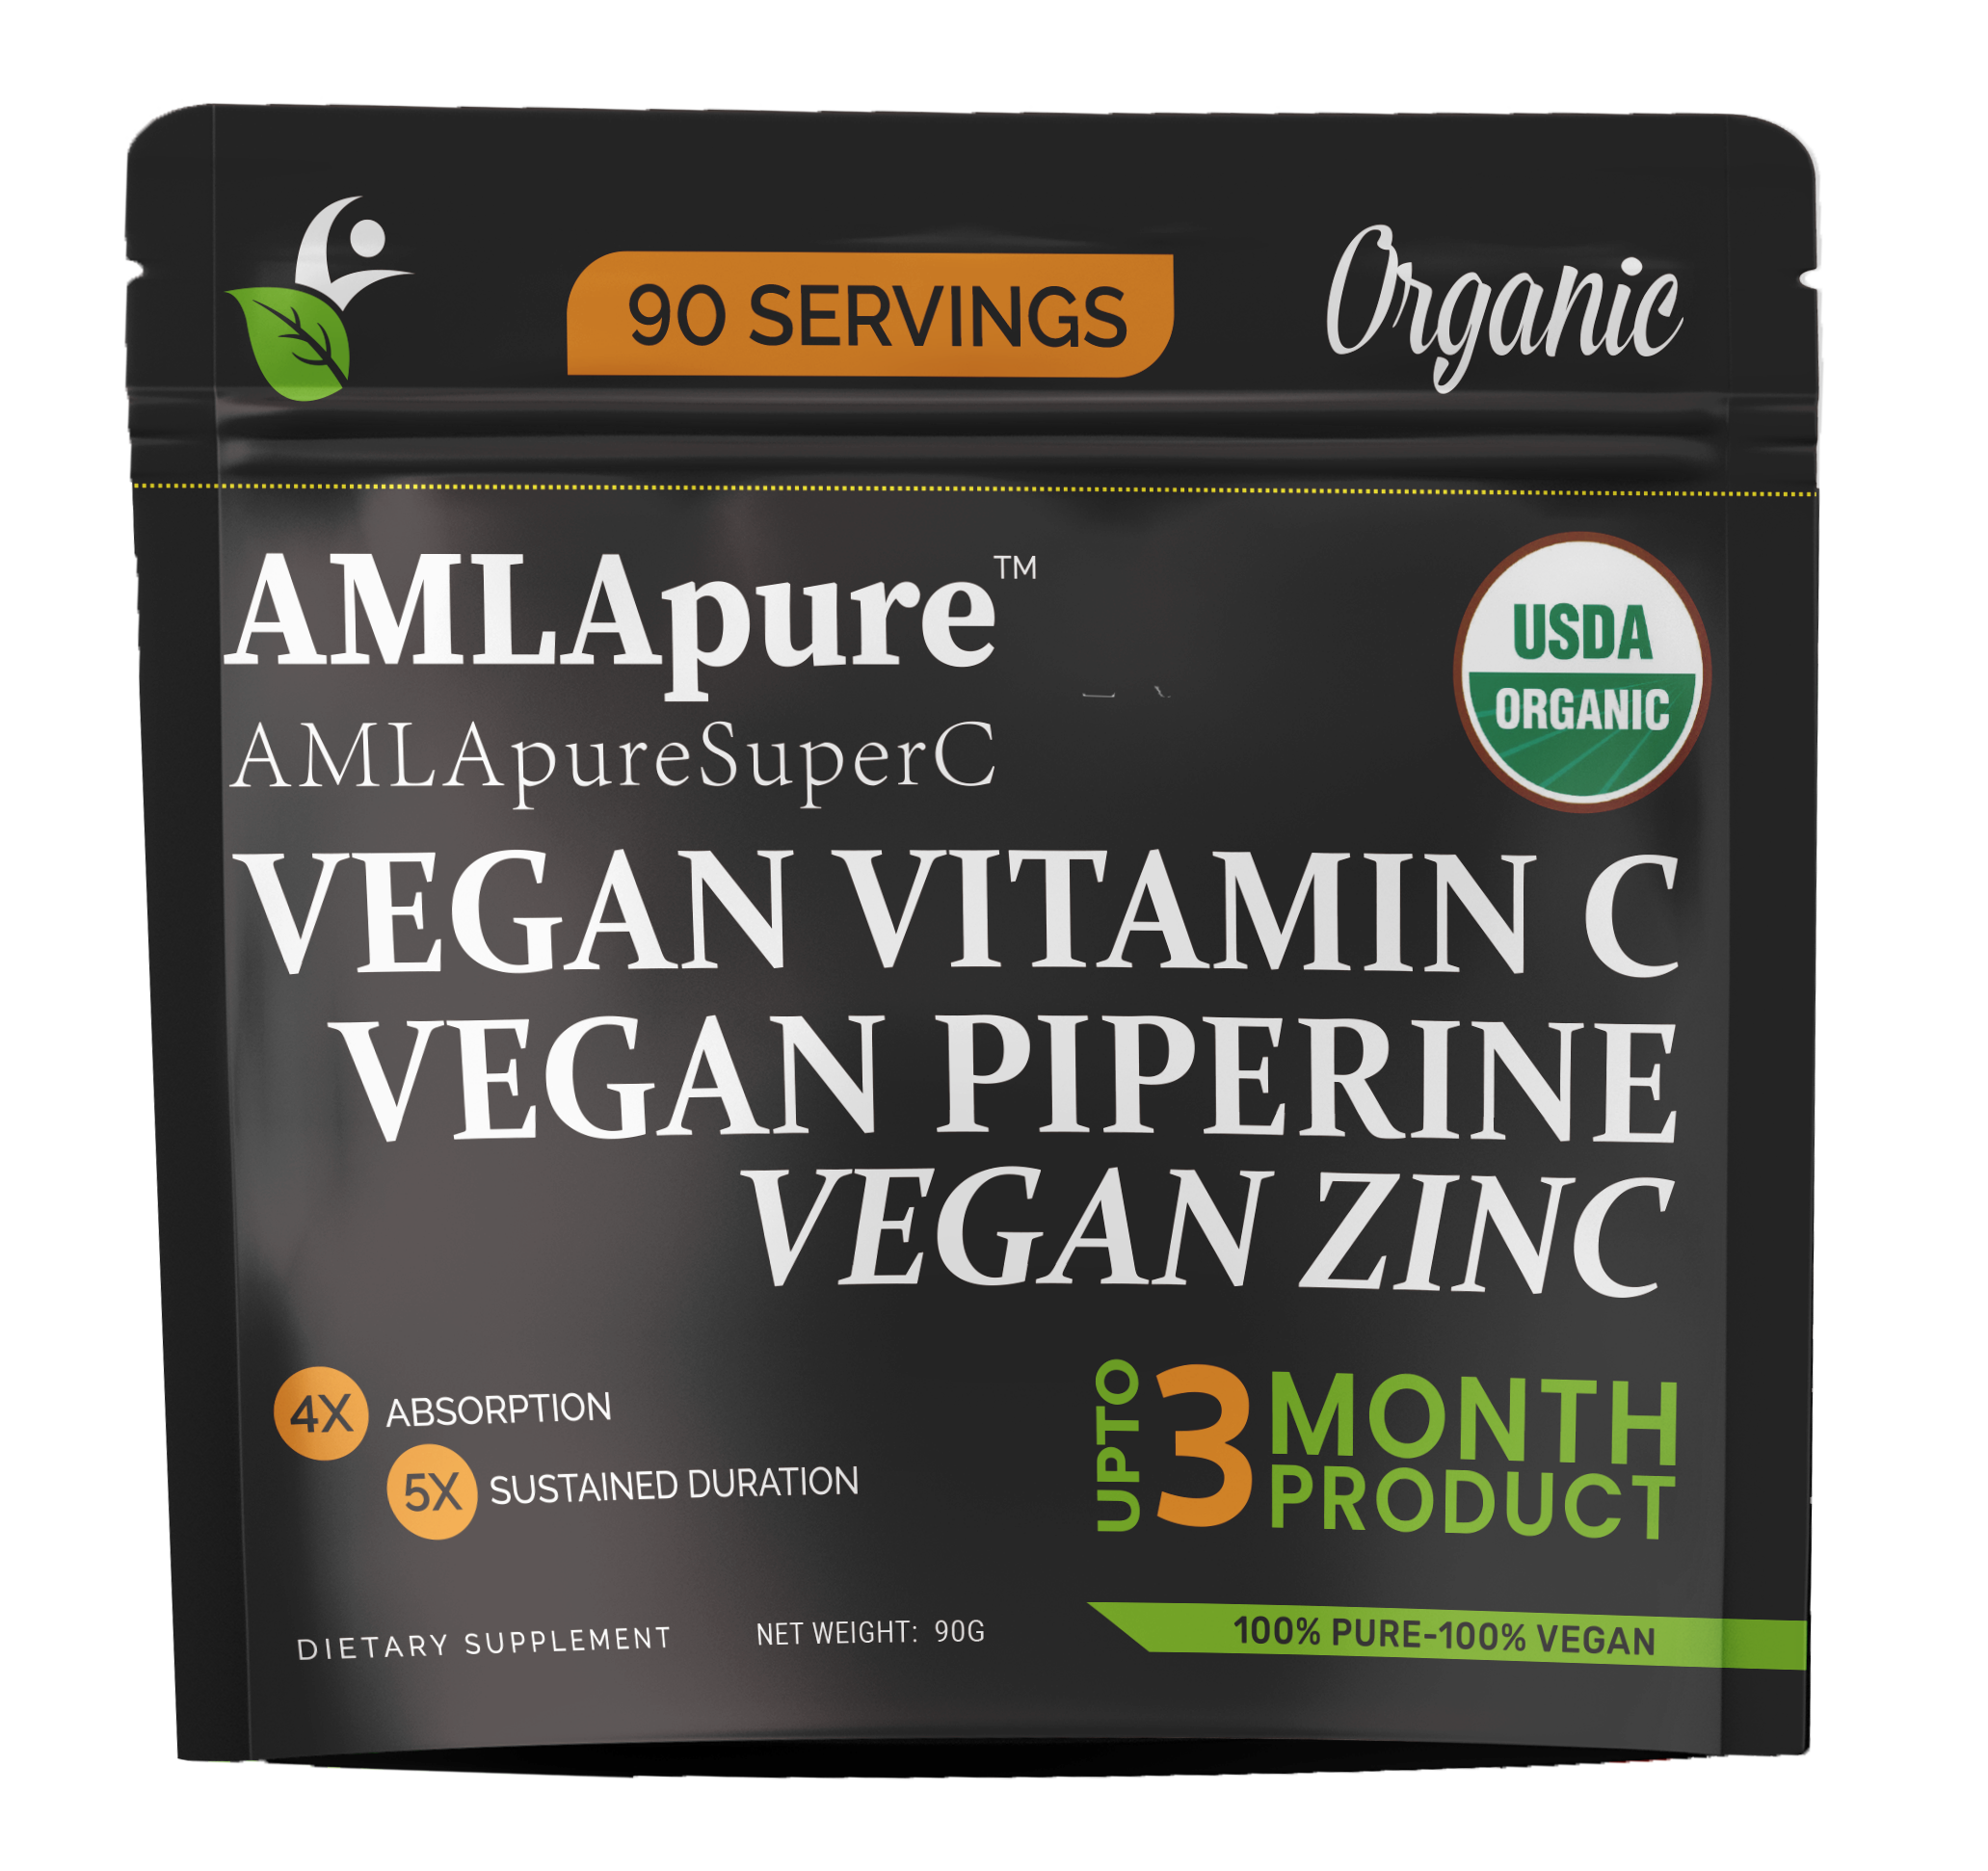 Vegan Vitamin C - USDA Organic